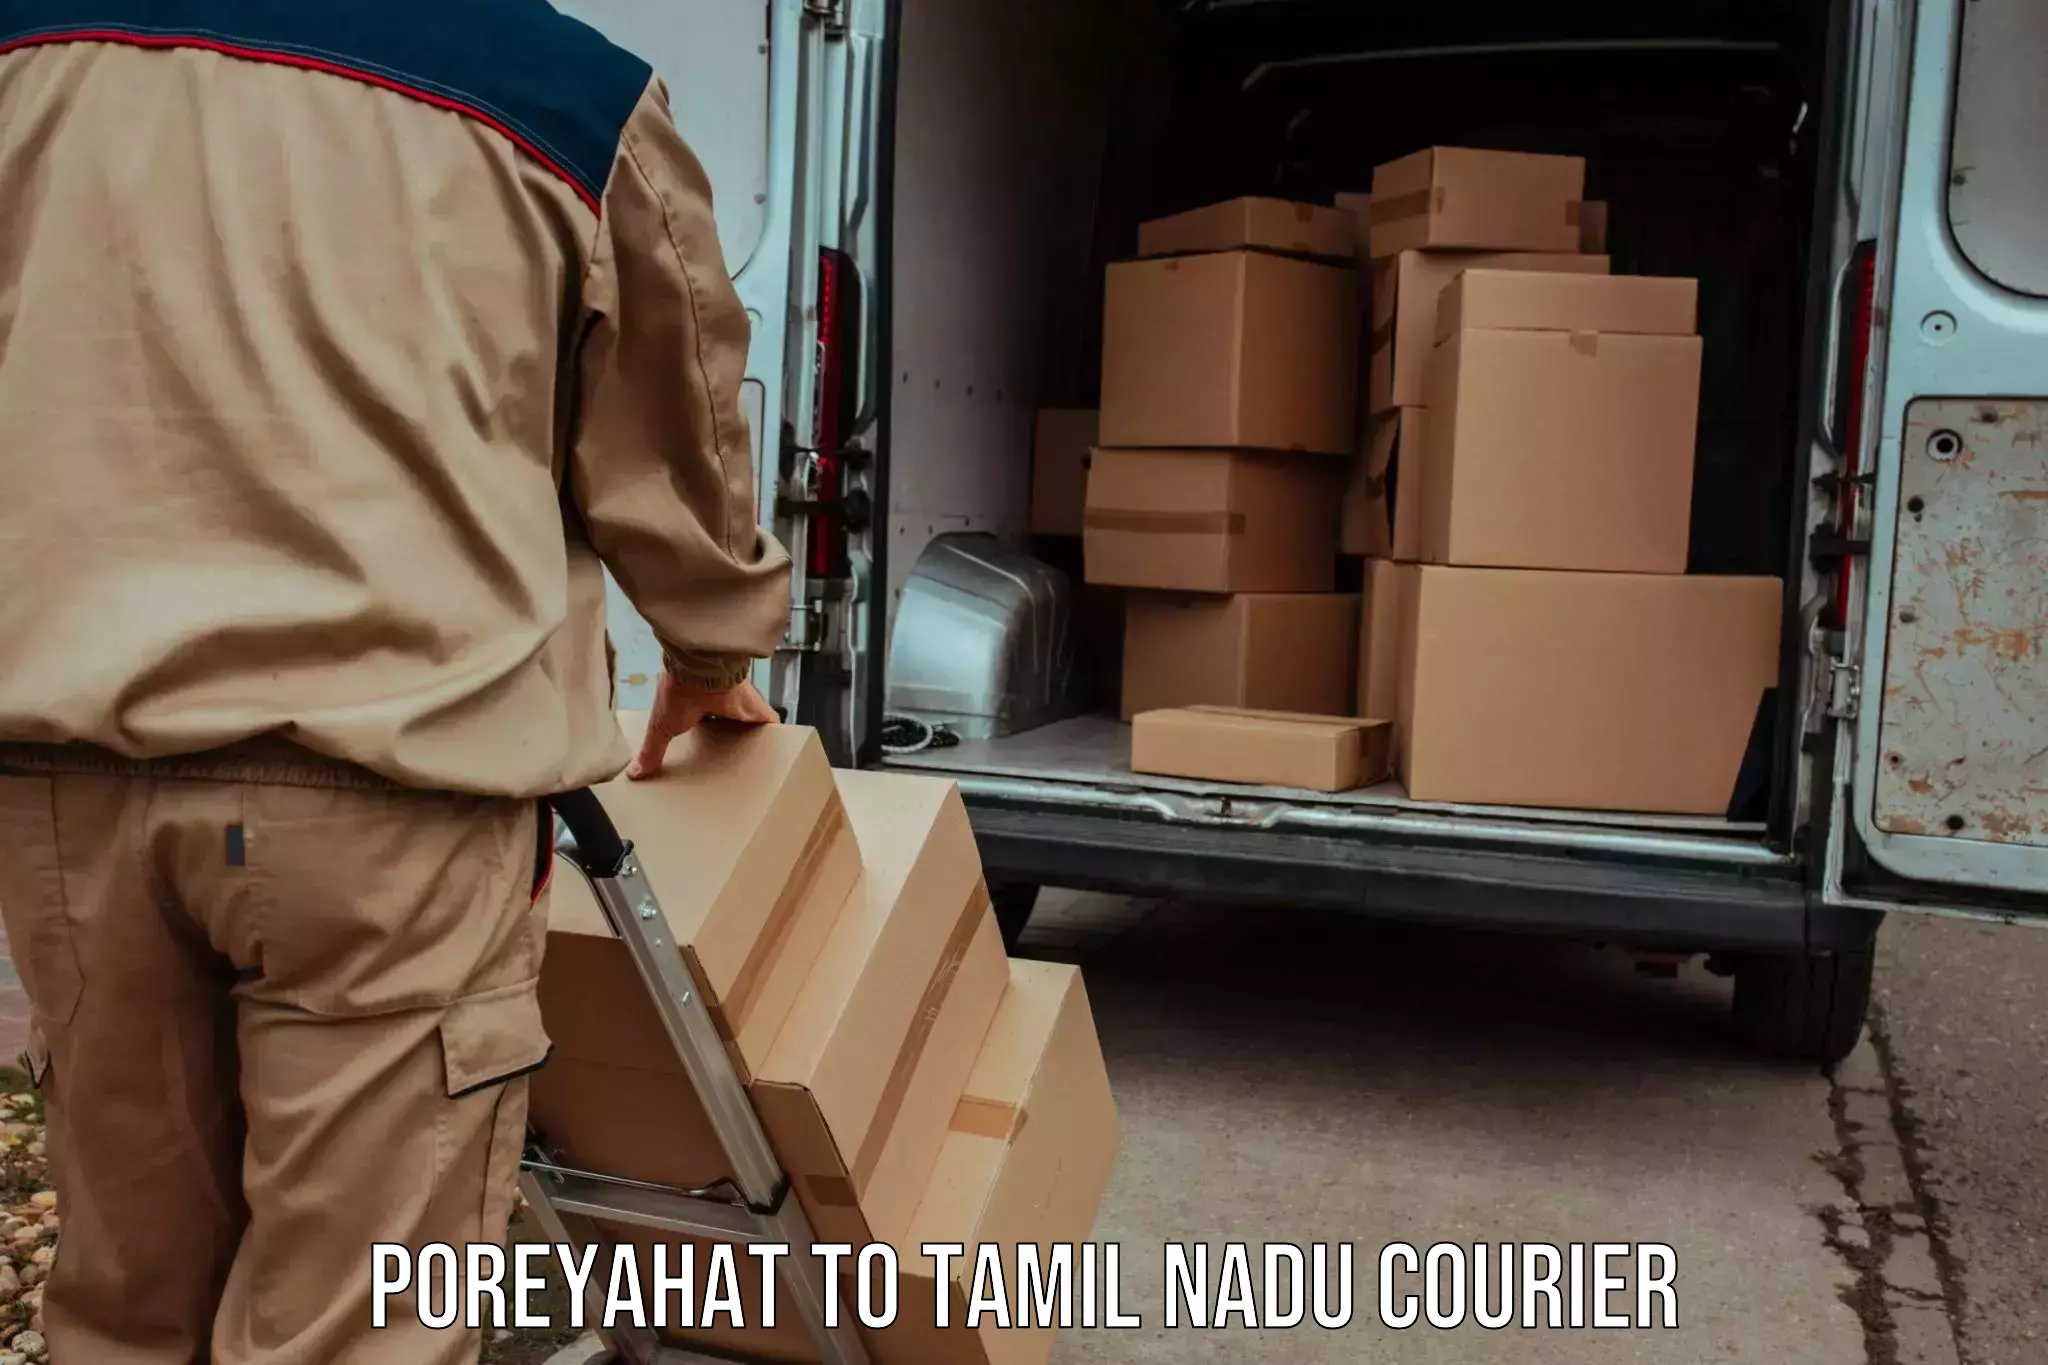 Courier services in Poreyahat to Tiruchirappalli